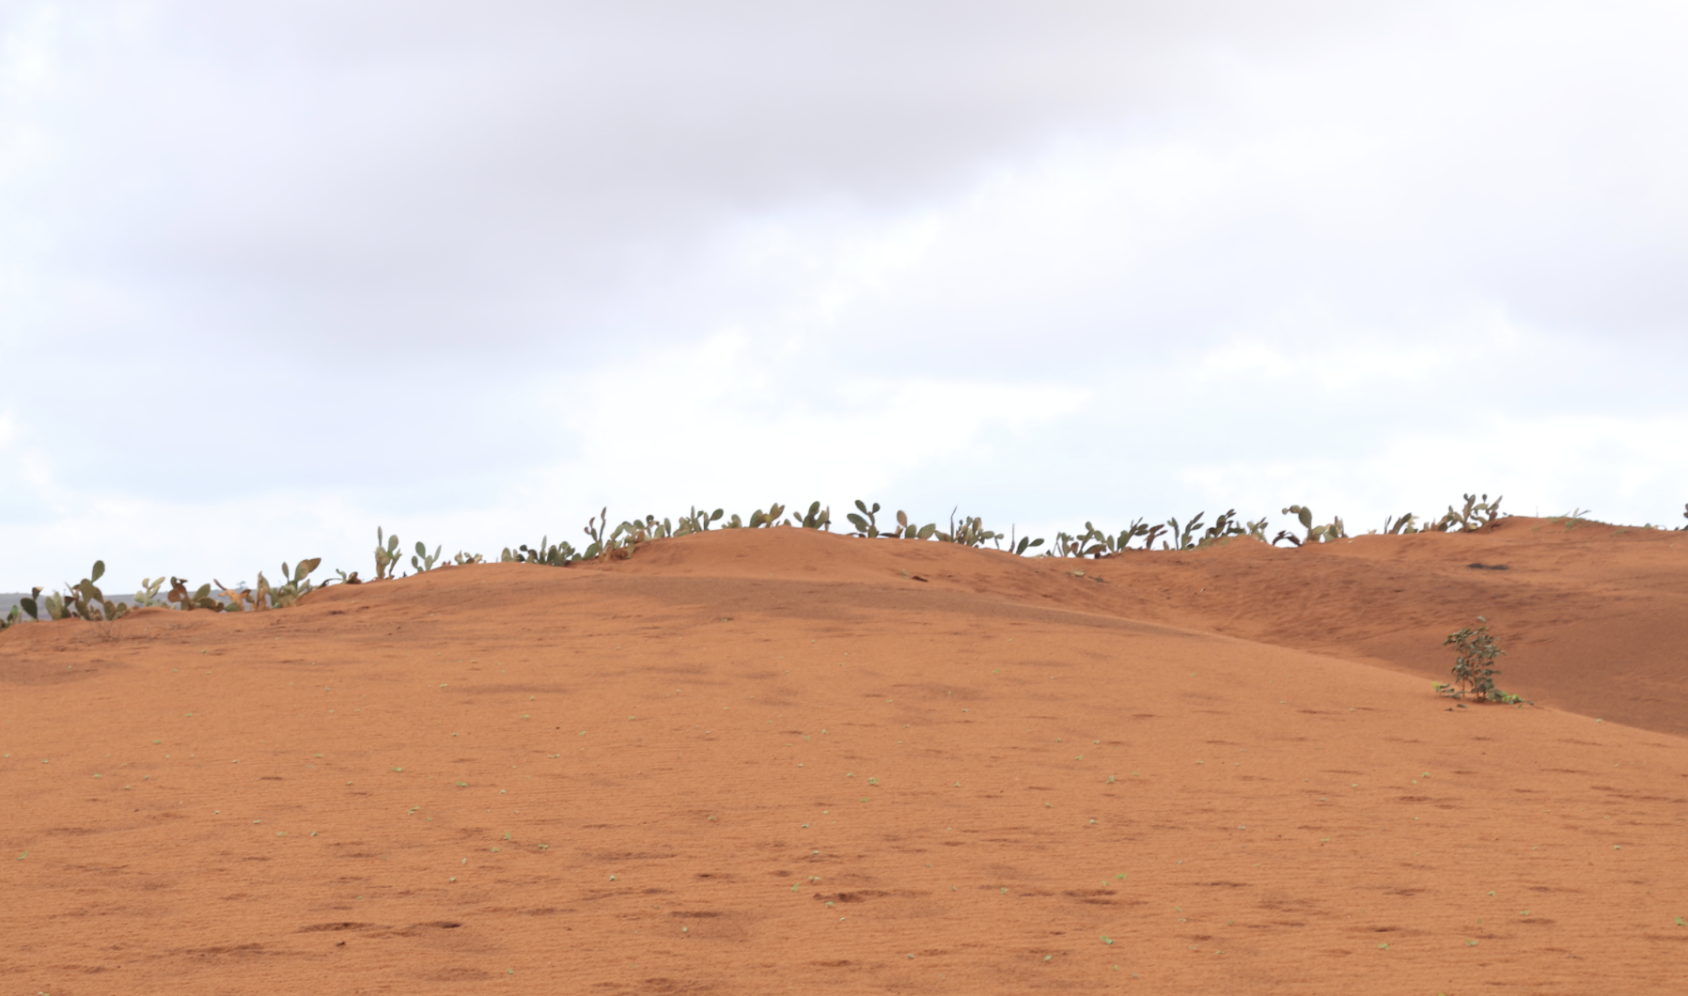 صورة طبيعية للكثبان الرملية ذات اللون الأحمر / البرتقالي مع عدد قليل من النباتات الخضراء التي تنمو في الأعلى.